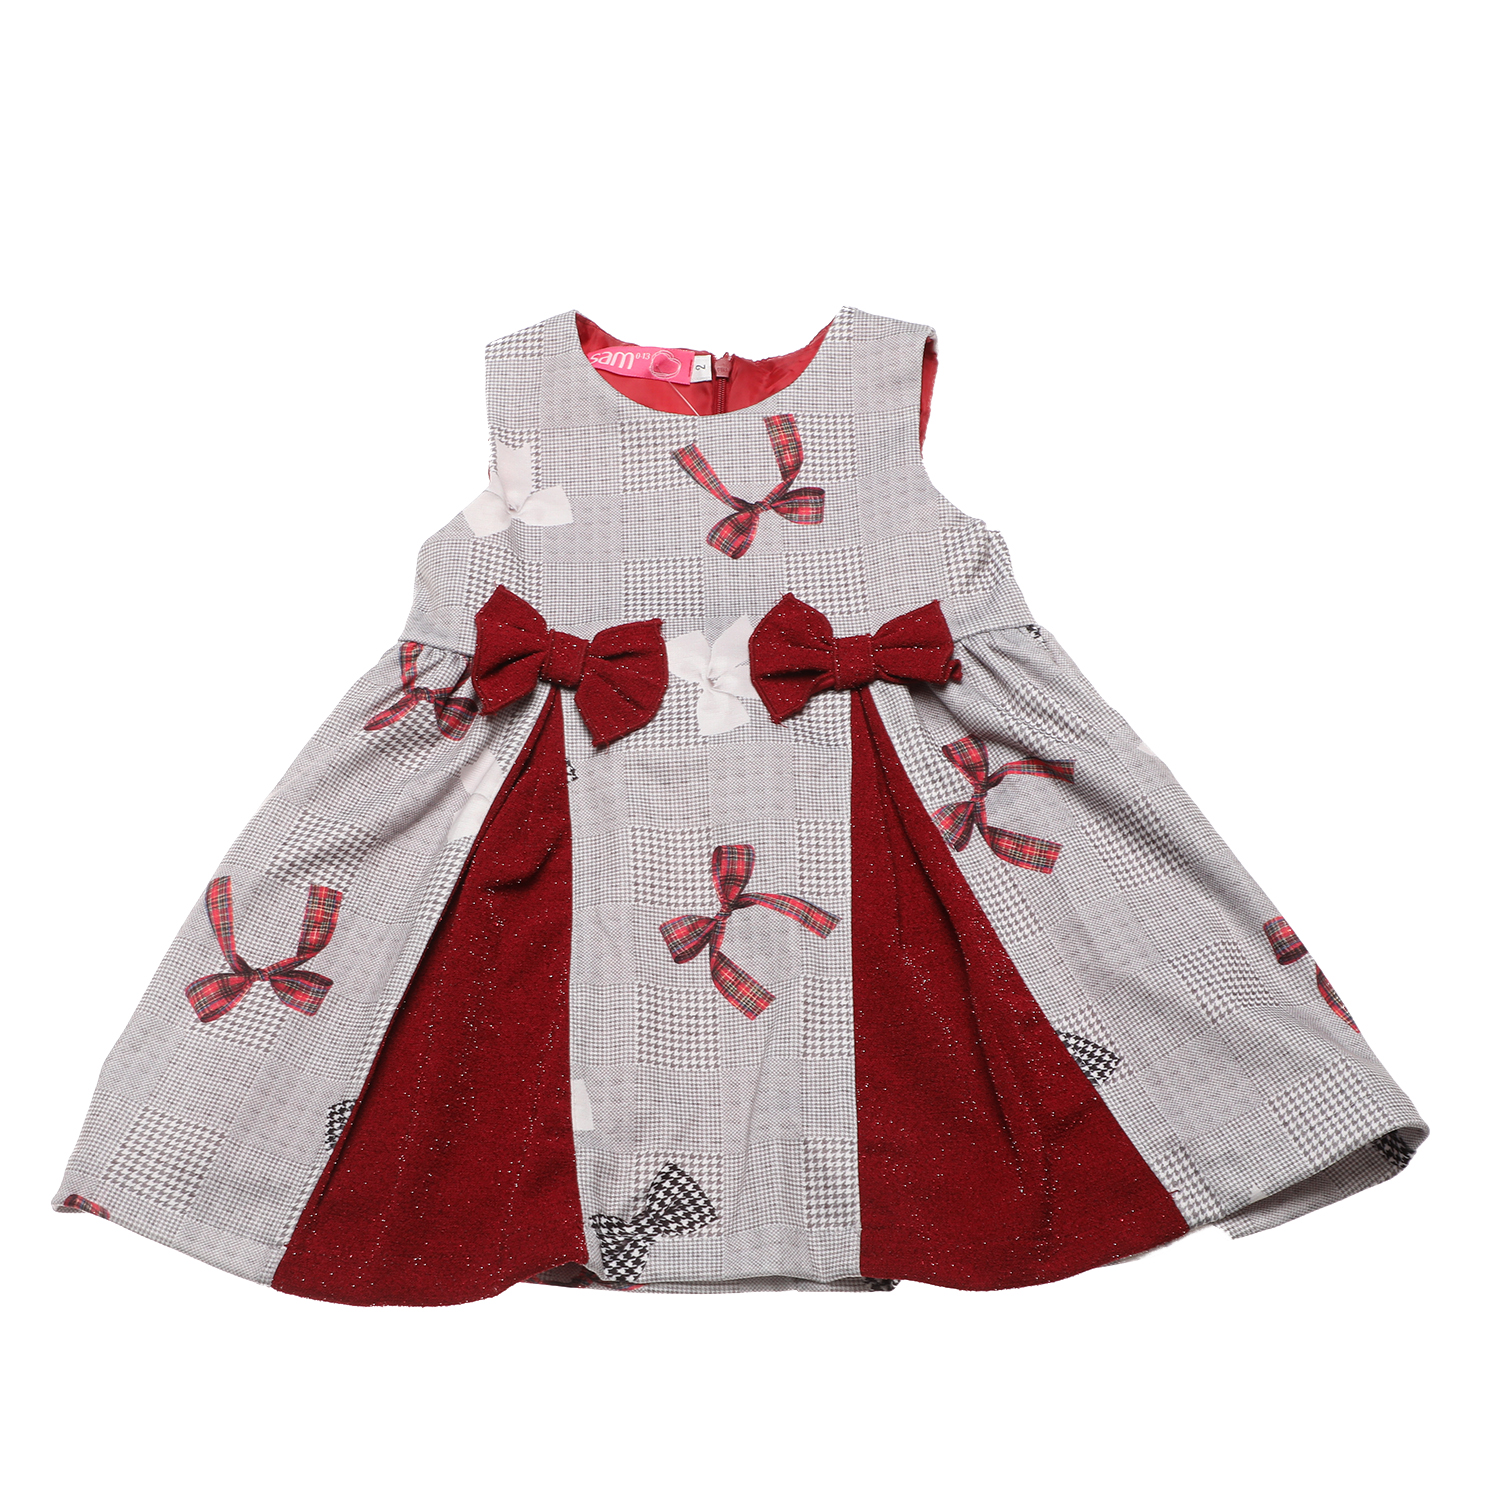 Παιδικά/Girls/Ρούχα/Φορέματα Κοντομάνικα-Αμάνικα SAM 0-13 - Παιδικό φόρεμα SAM 0-13 γκρι κόκκινο